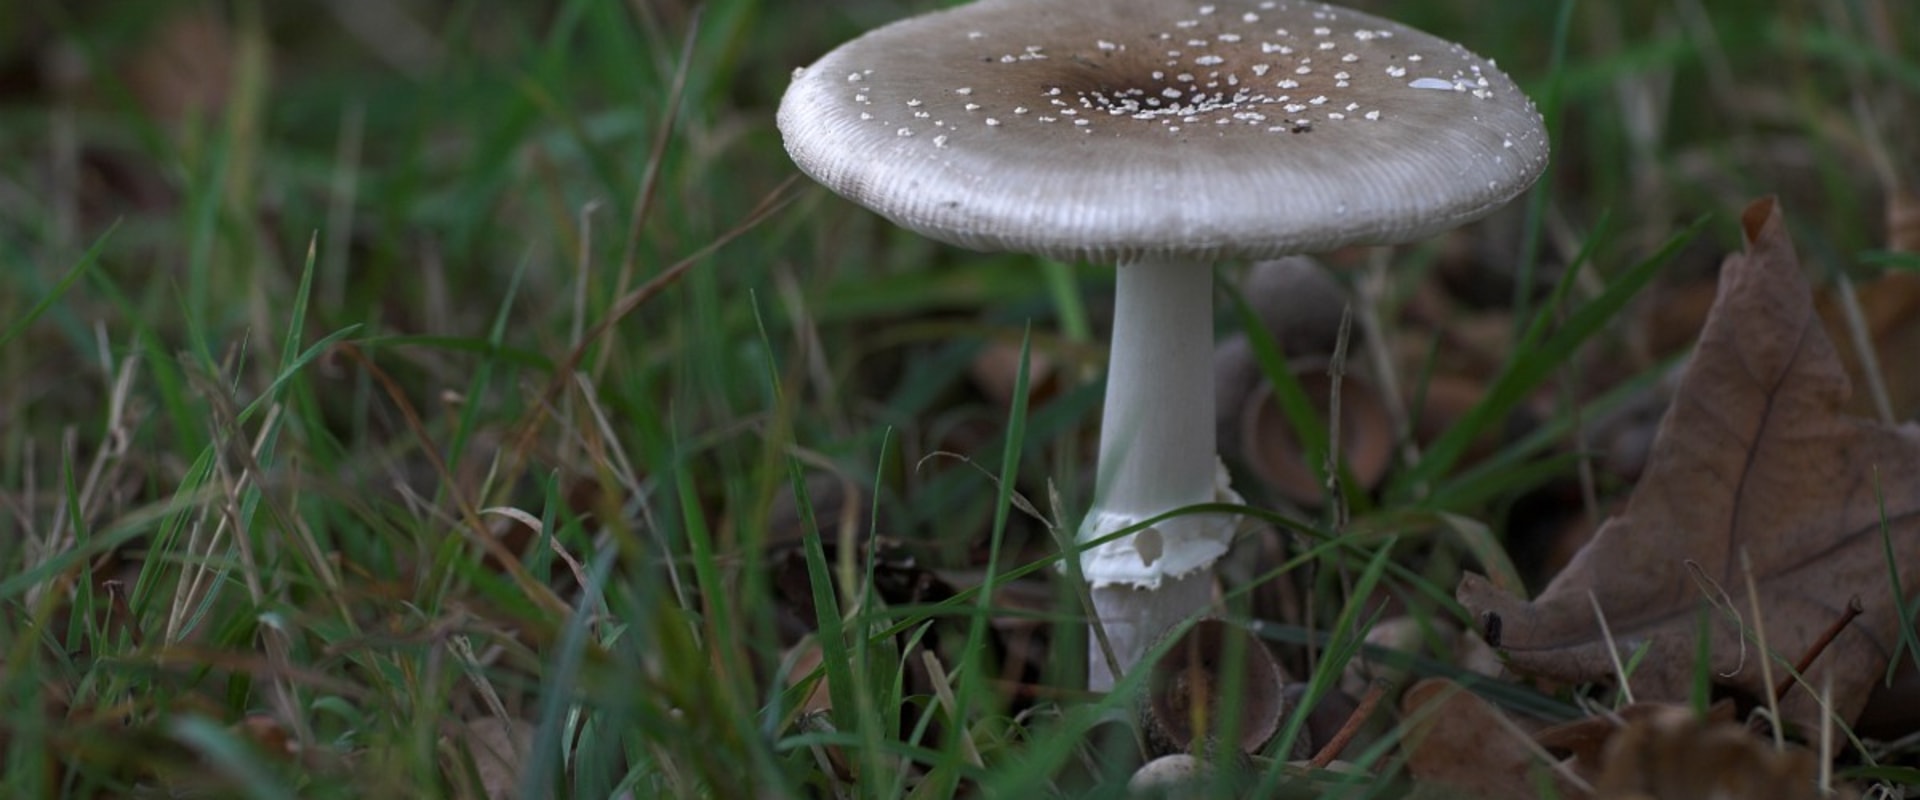 Witte paddenstoelen in de achtertuin?